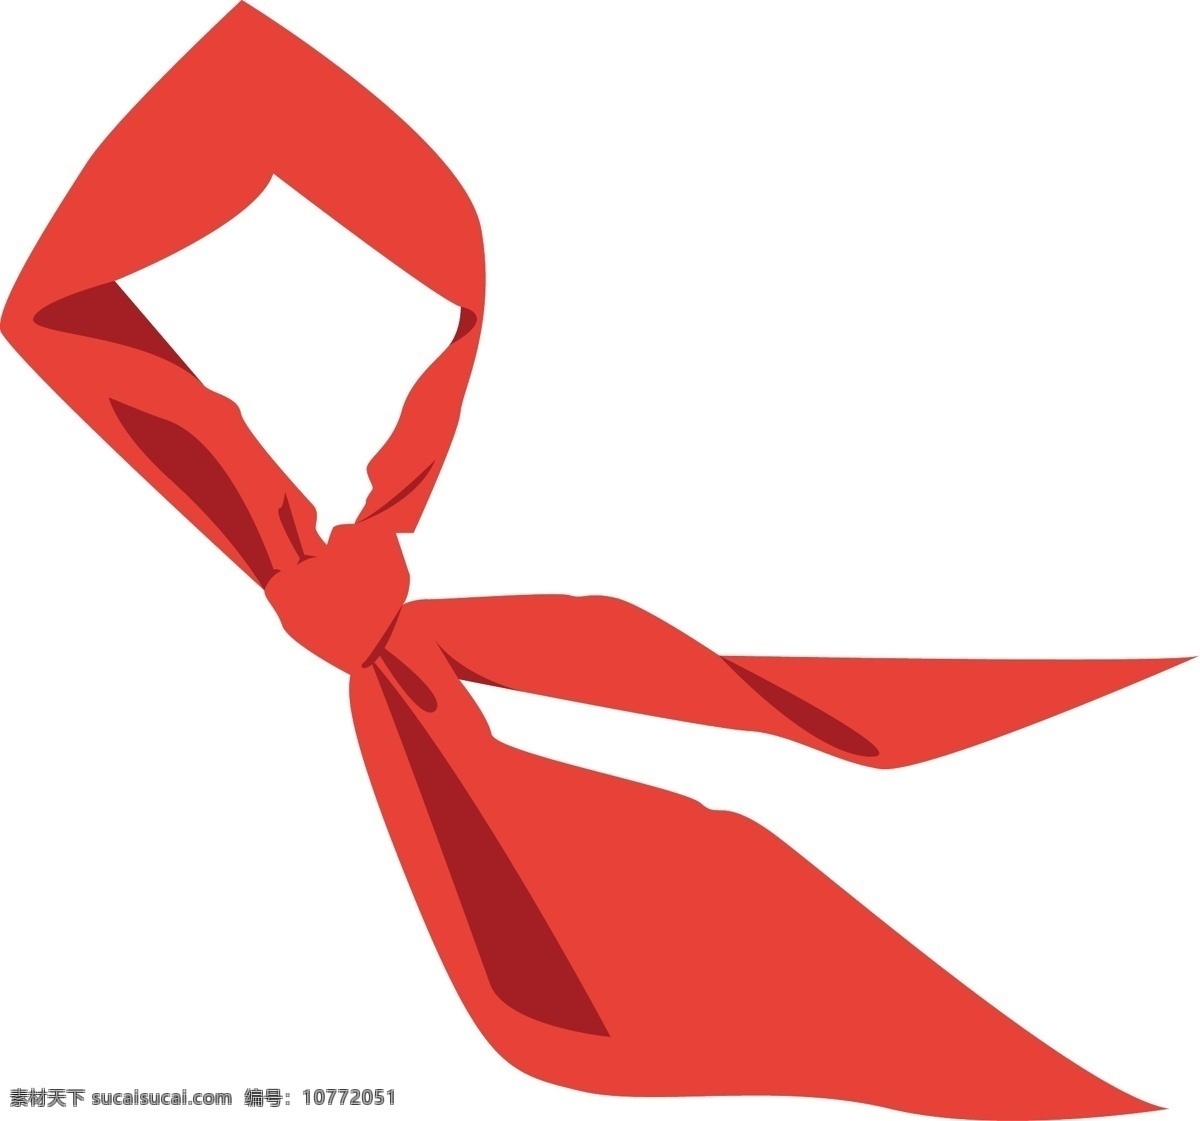 红领巾素材 红领巾 红领巾分层图 红领巾广告 学生红领巾